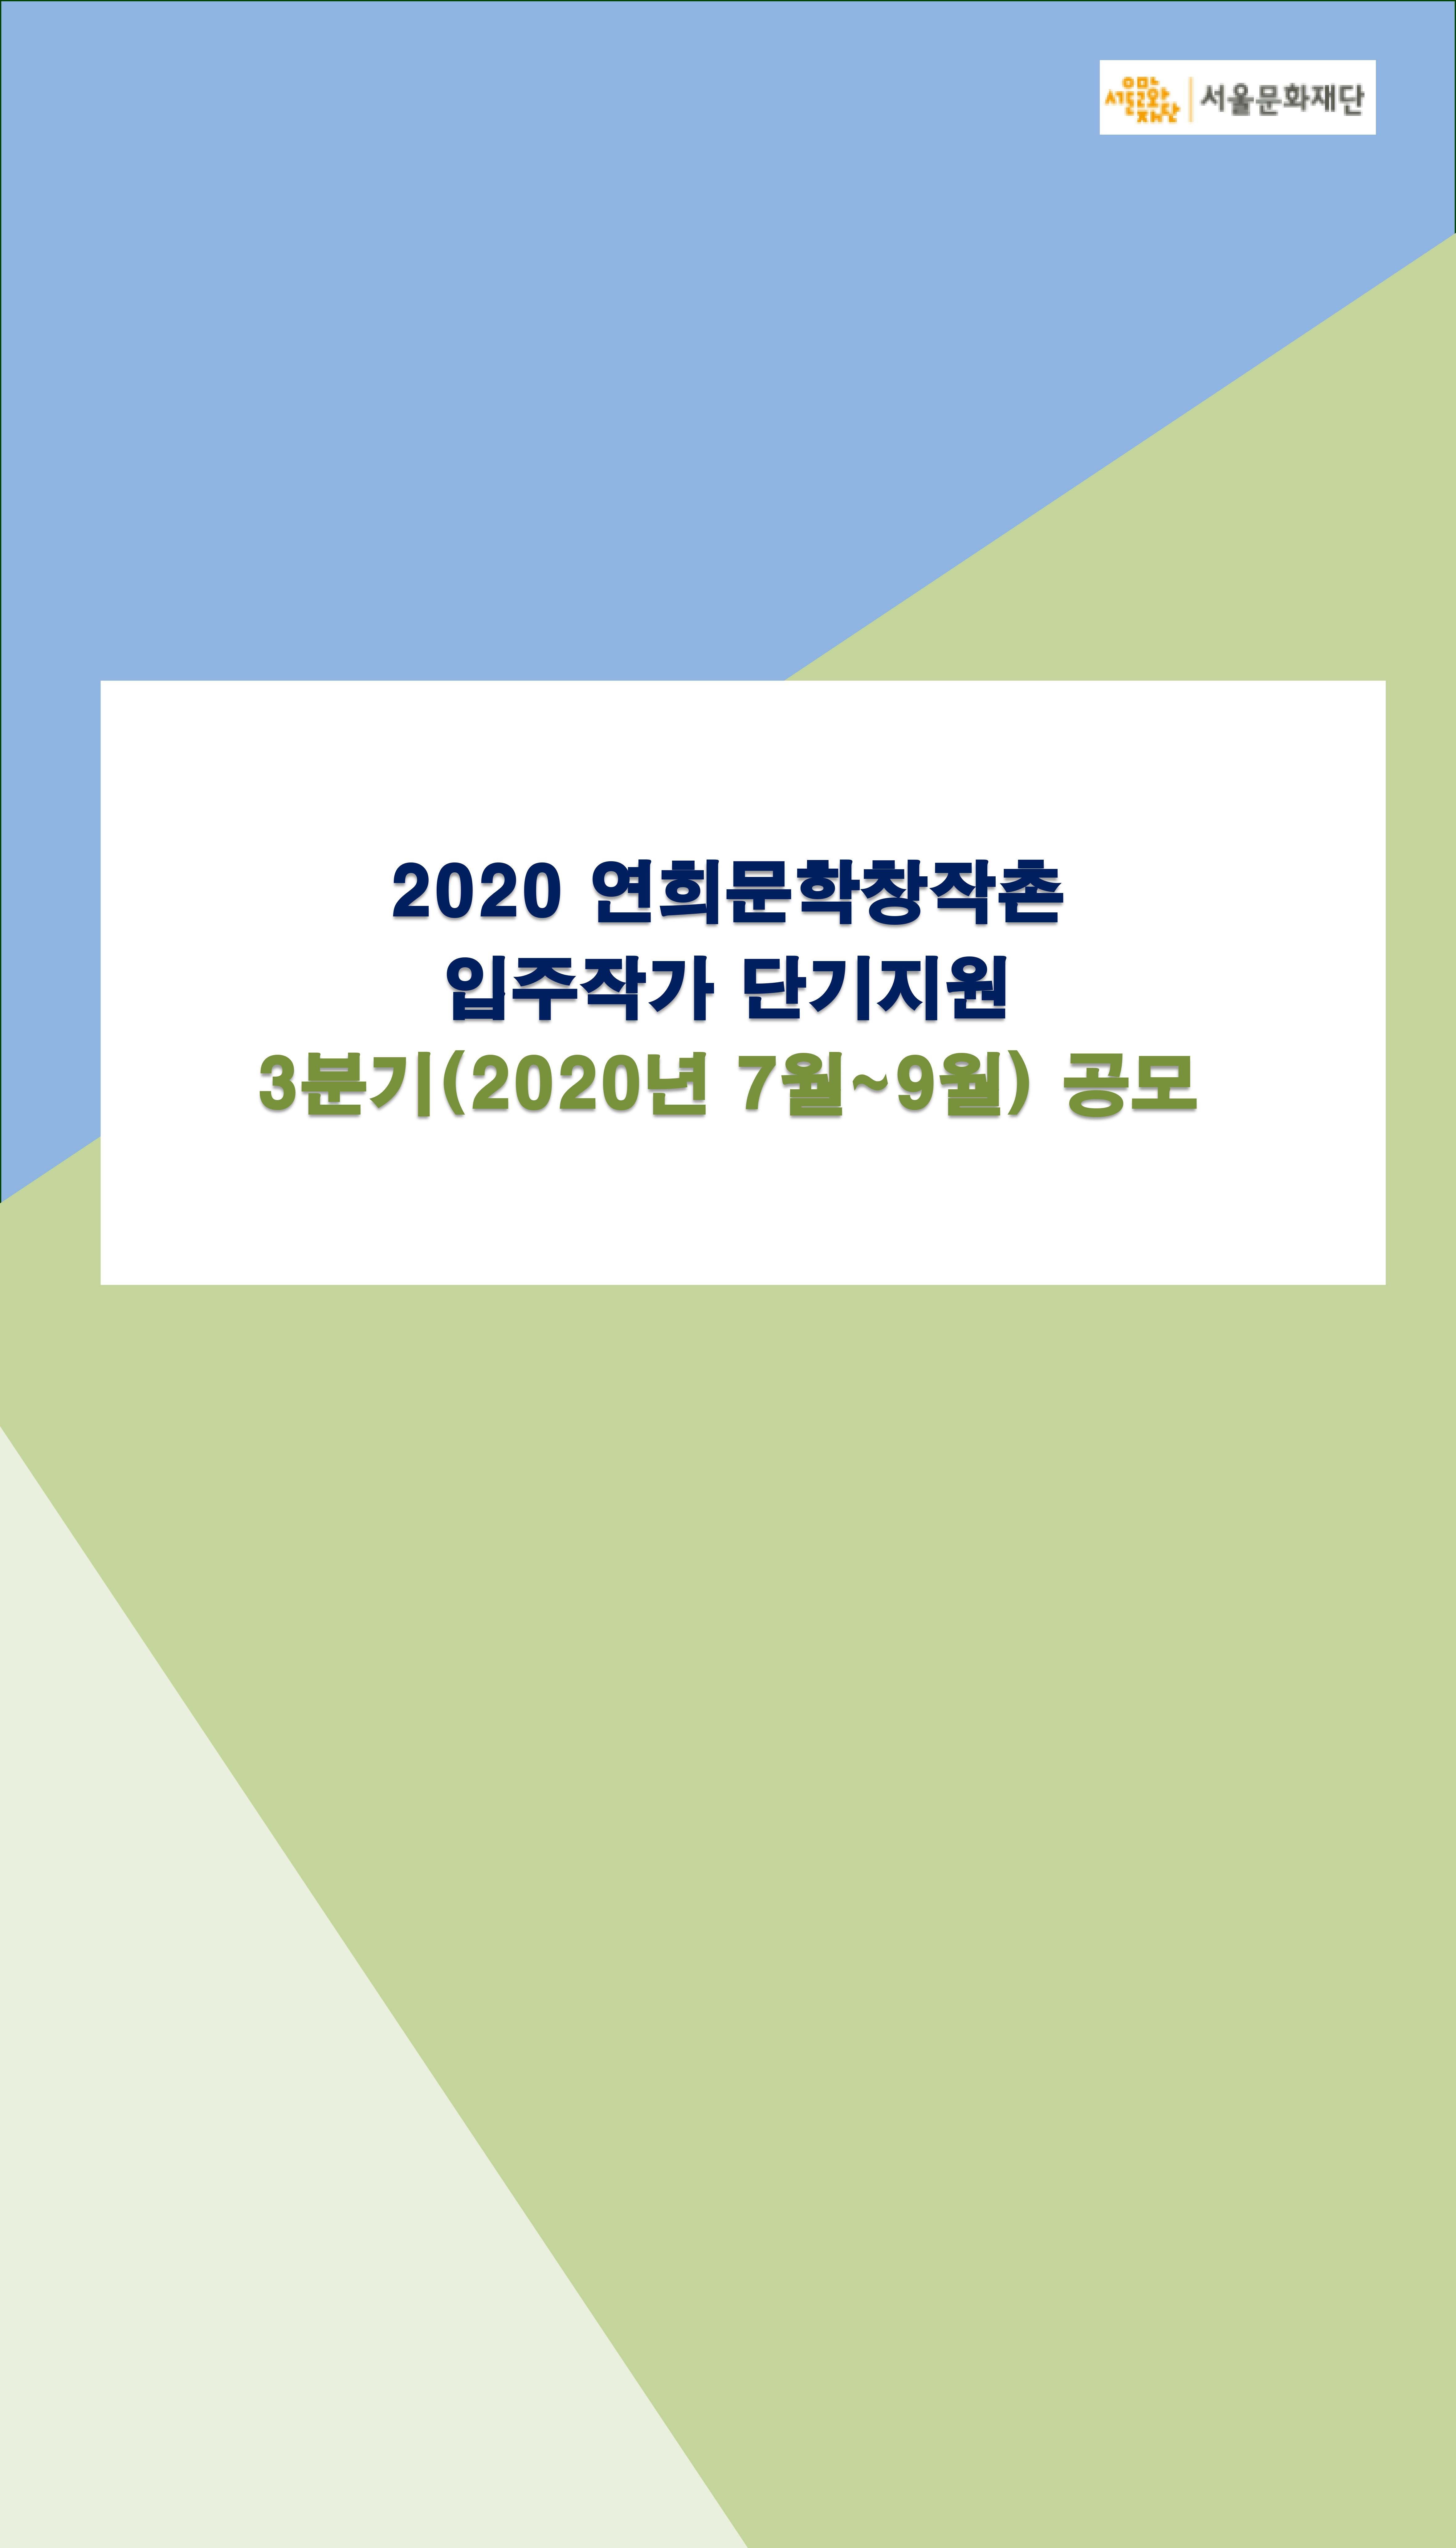 2020 연희문학창작촌 입주작가 3분기 단기지원 공모